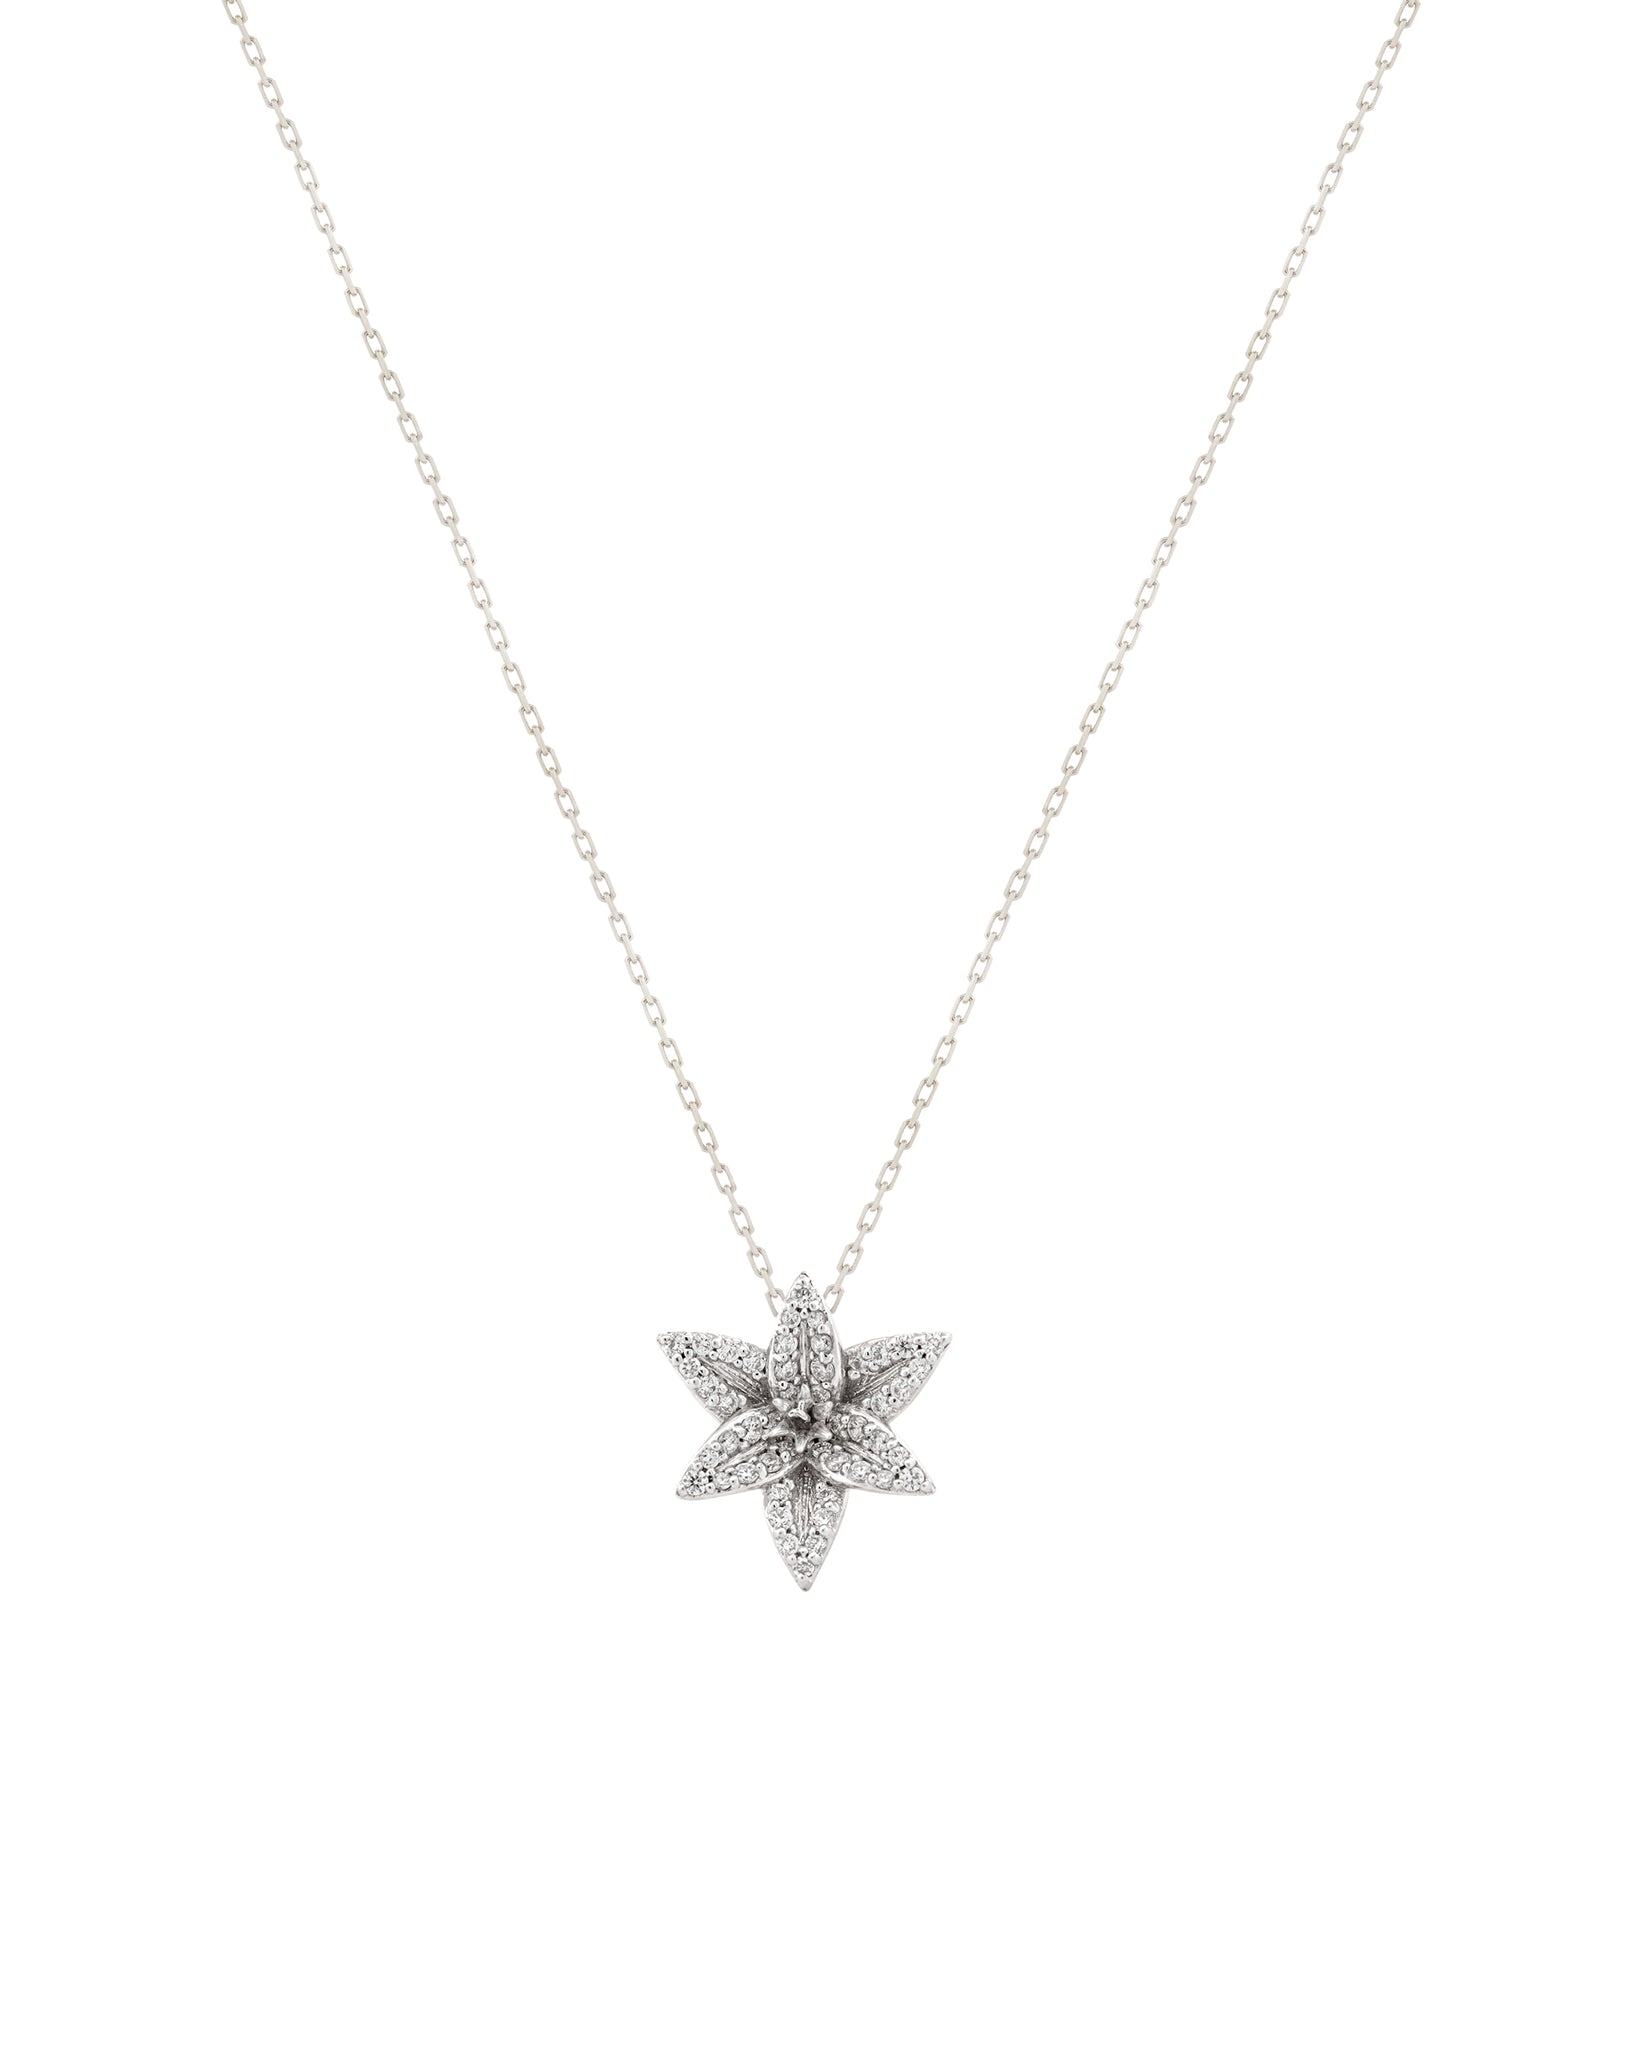 FLORA Pave Diamond Lily Pendant Necklace - 18k